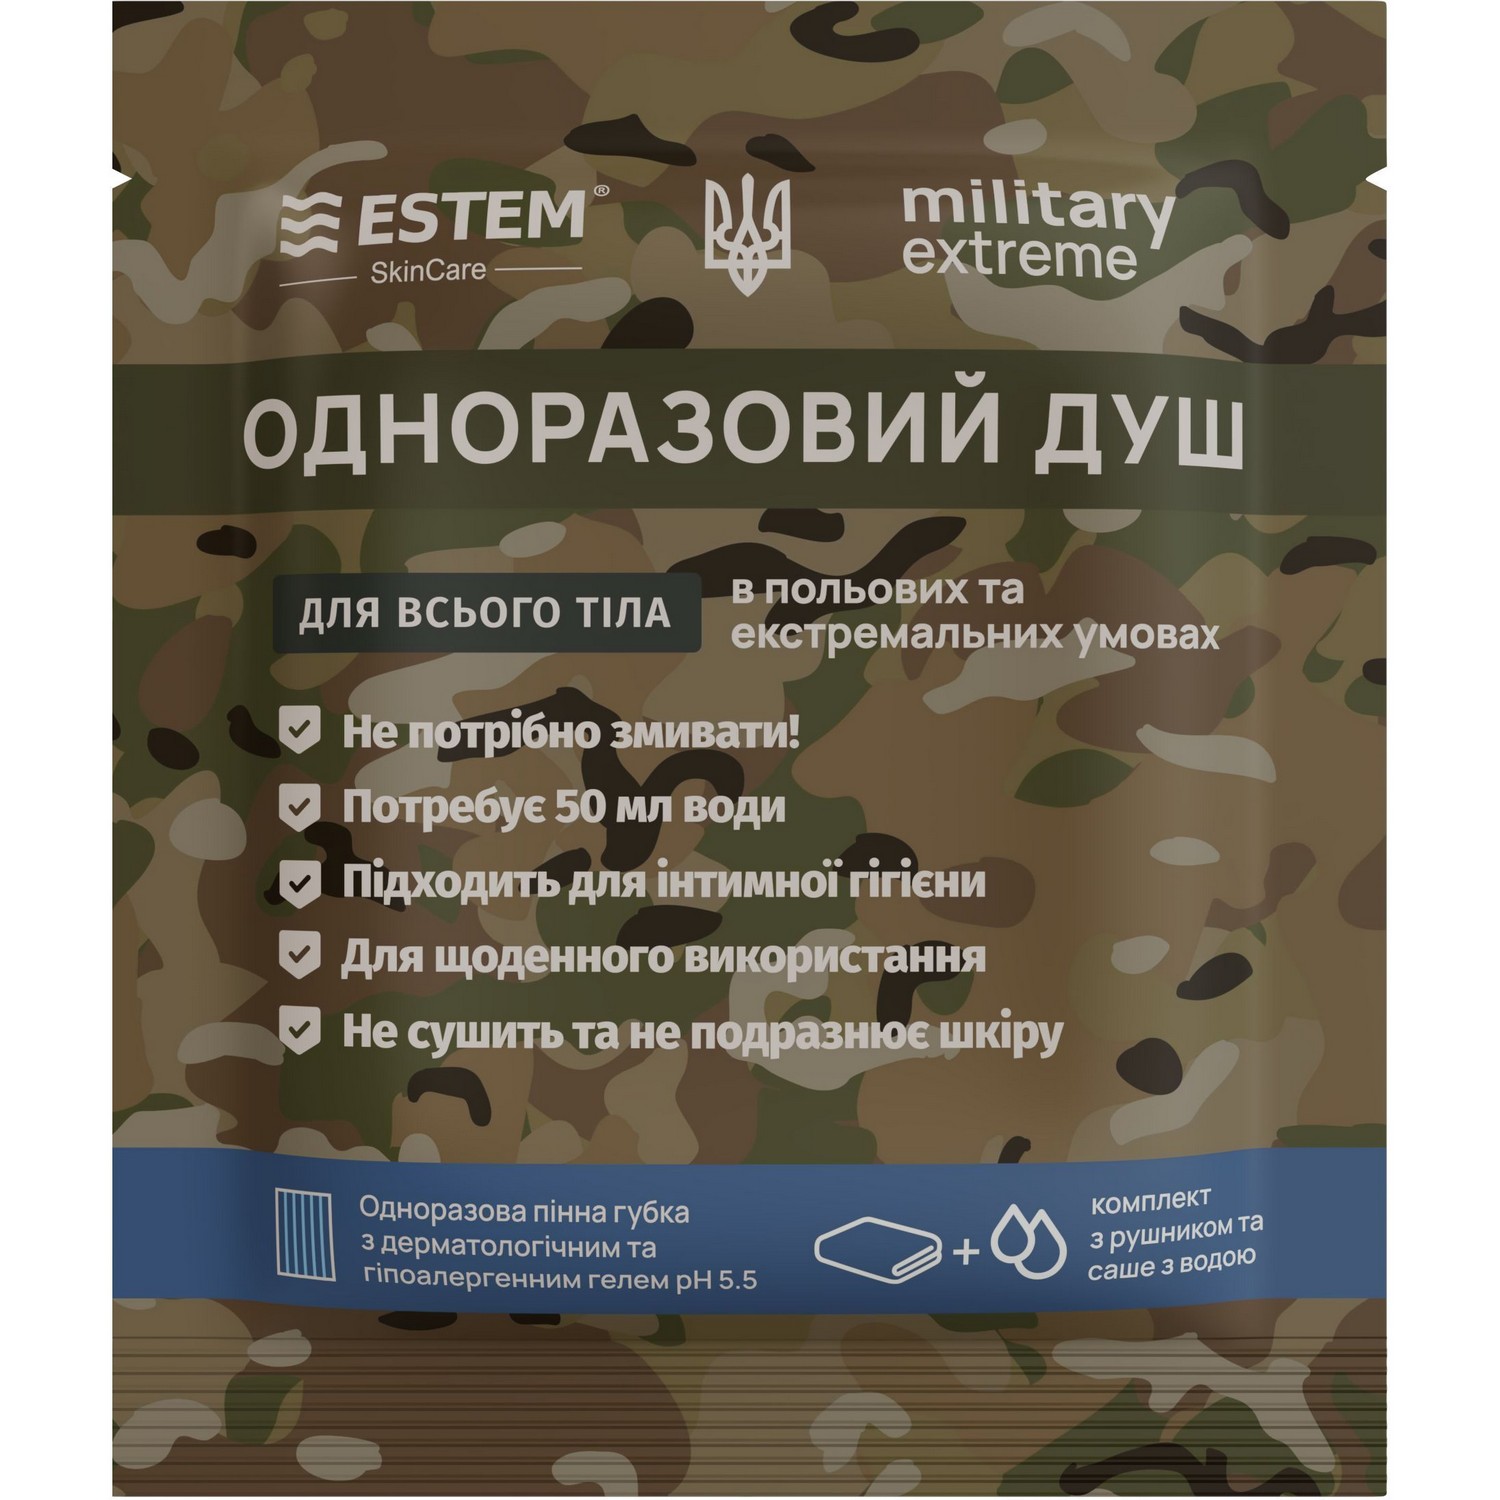 Одноразовый душ для военных Estem Military Extreme - фото 1